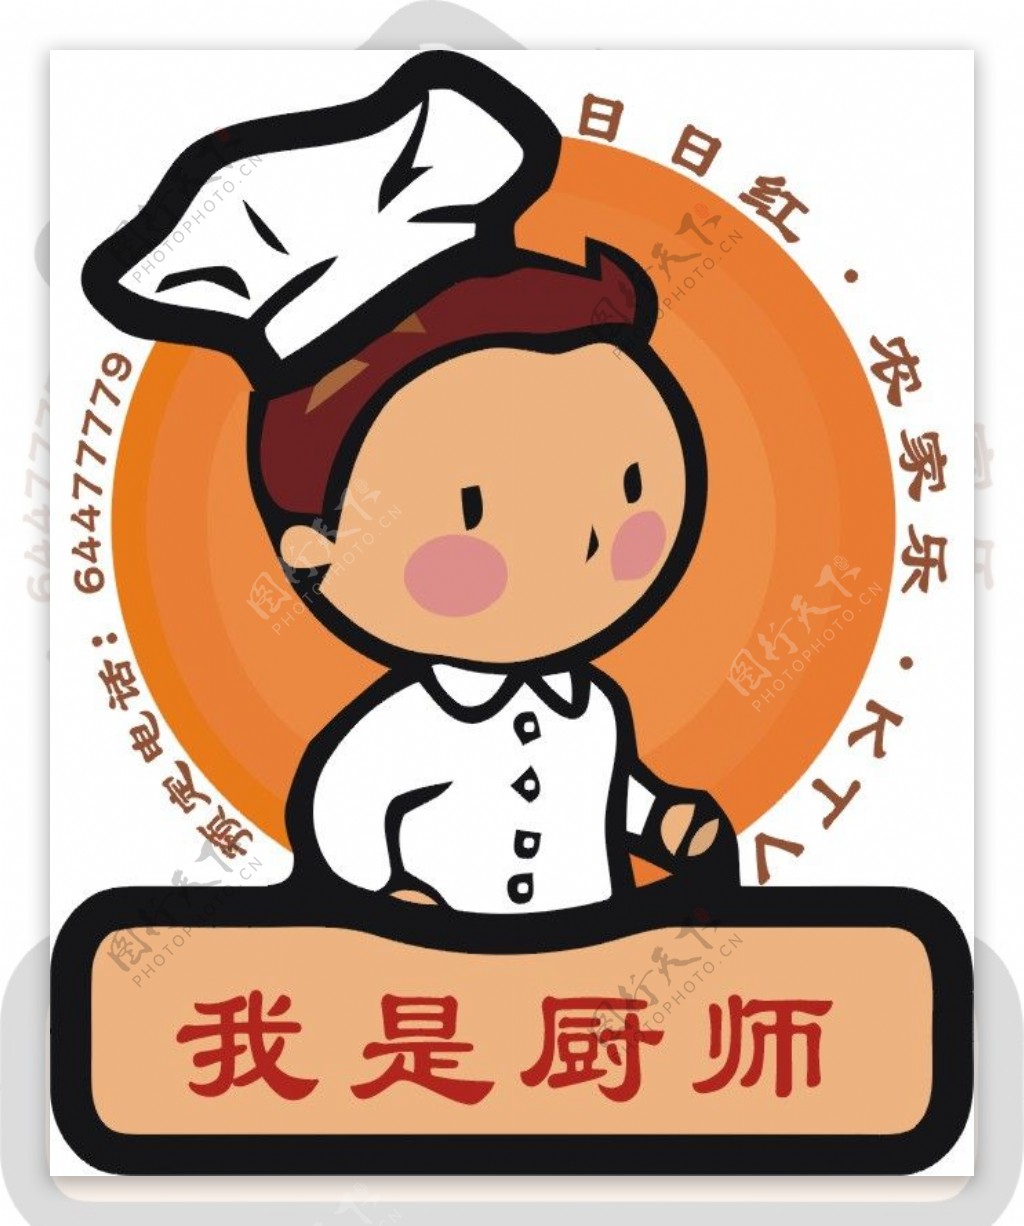 厨师logo图片